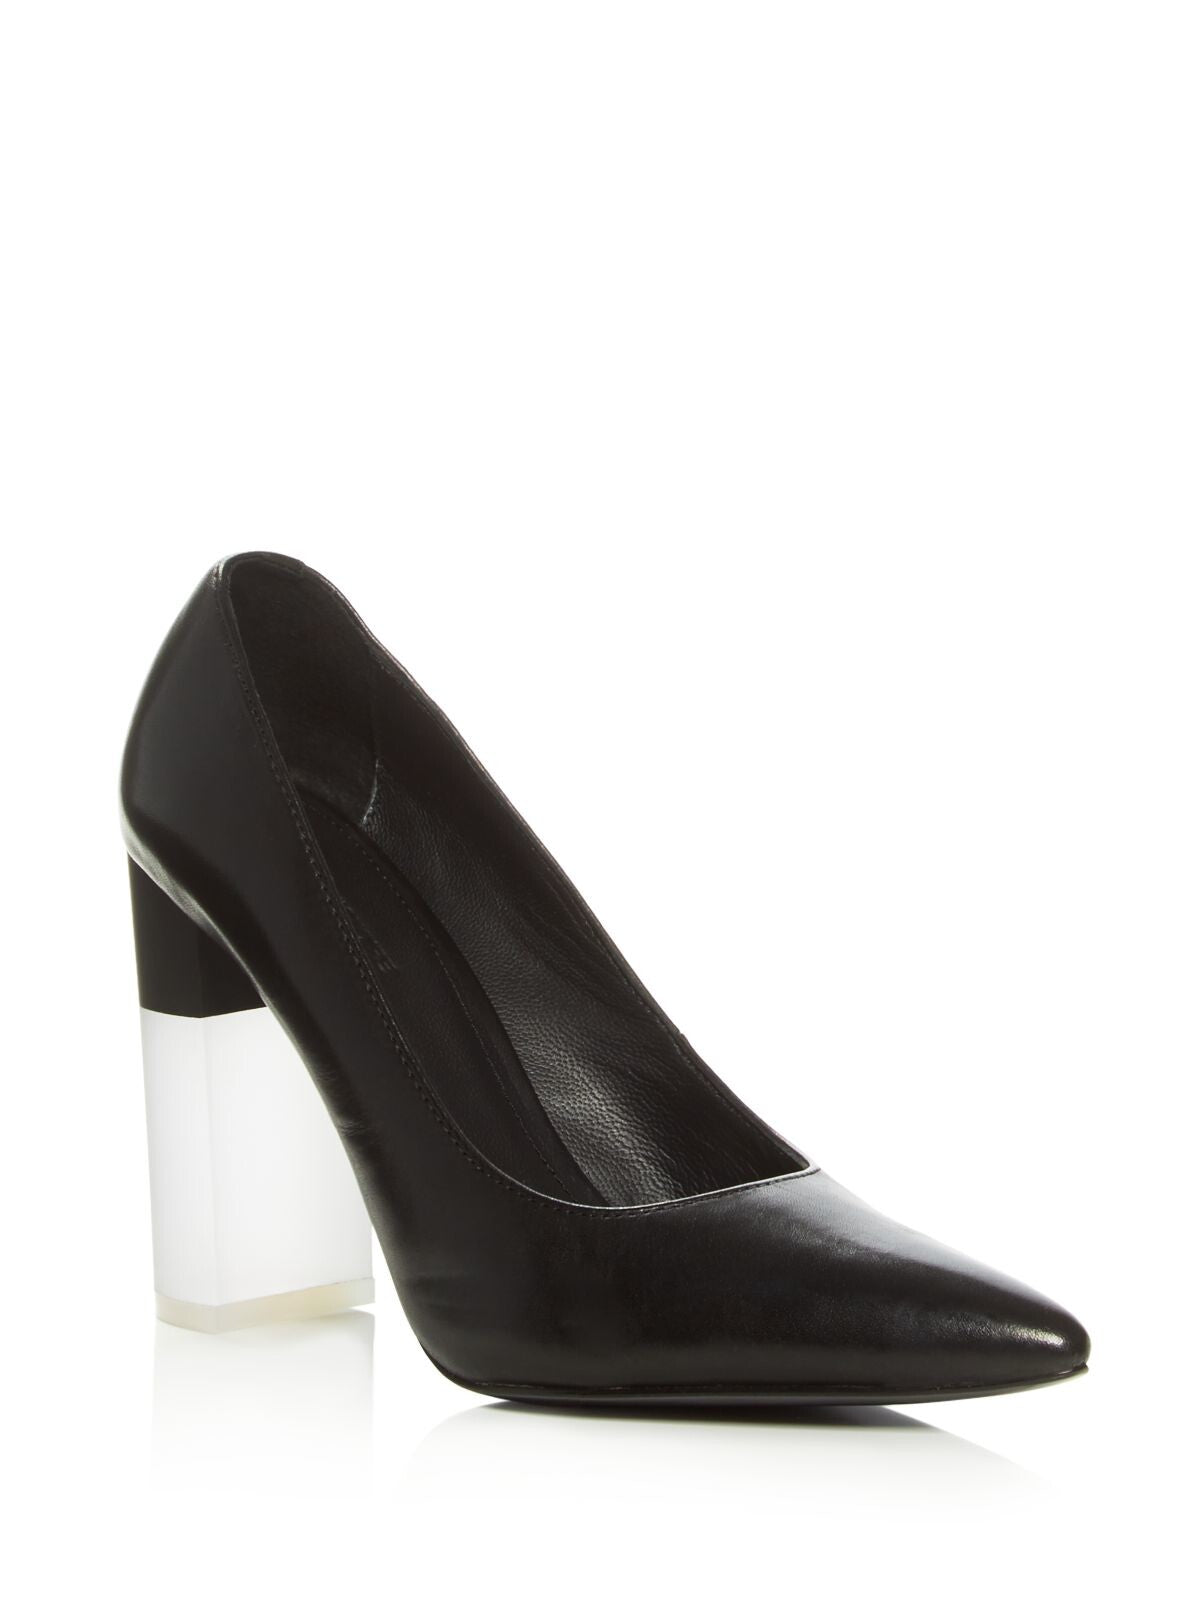 POUR LA VICTOIRE Womens Black Translucent Comfort Callista Pointed Toe Block Heel Slip On Leather Dress Pumps Shoes 10 M